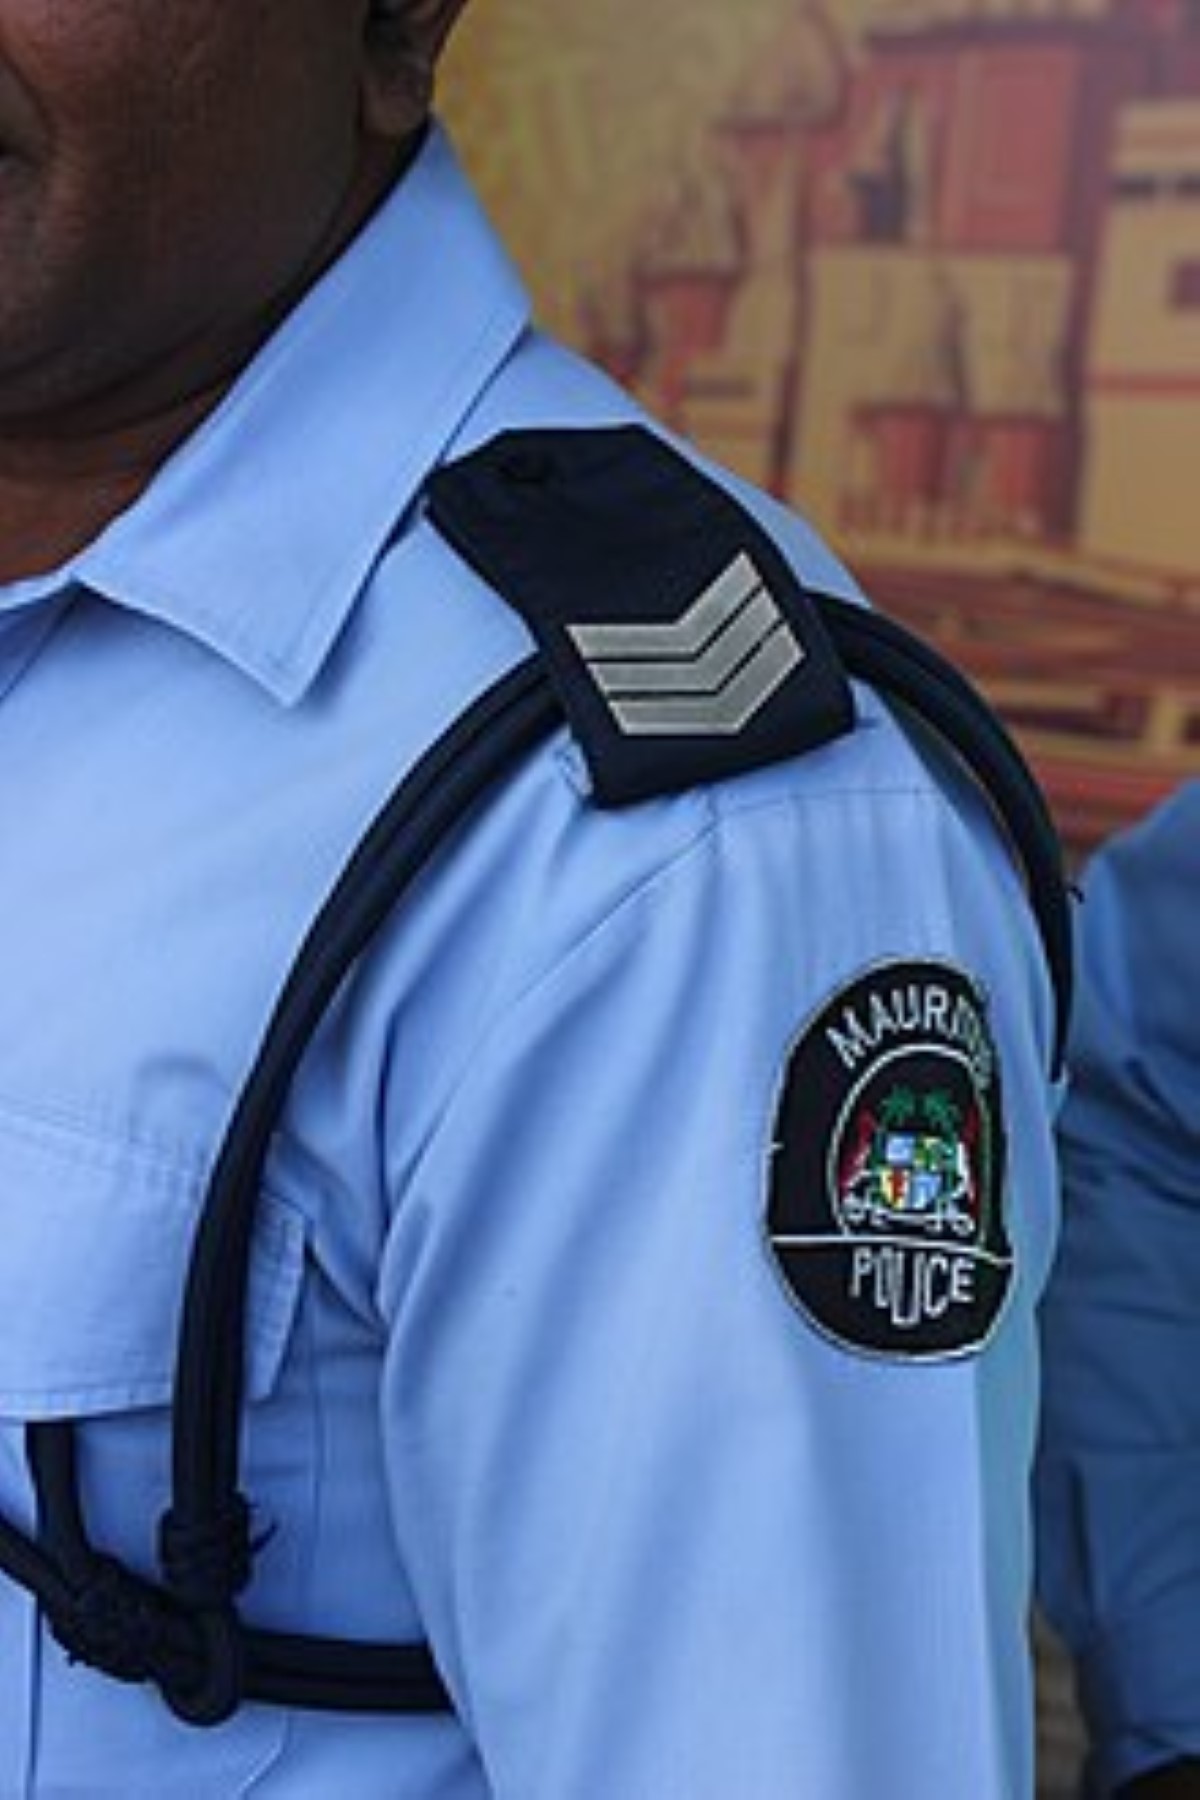 Conduite en état d'ivresse : Le permis d’un policier suspendu pour six mois